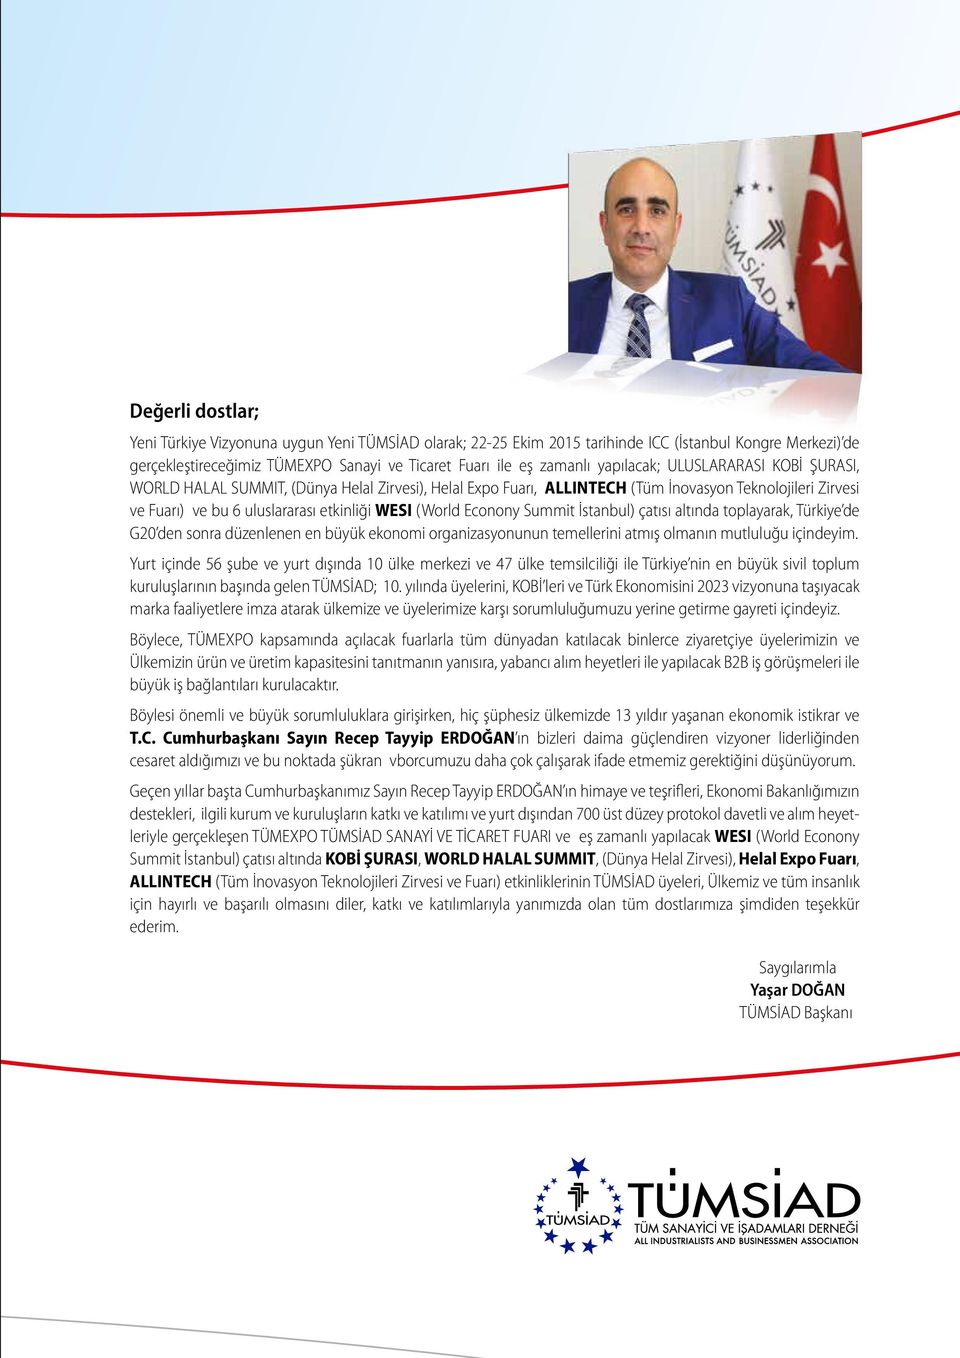 Econony Summit İstanbul) çatısı altında toplayarak, Türkiye de G20 den sonra düzenlenen en büyük ekonomi organizasyonunun temellerini atmış olmanın mutluluğu içindeyim.